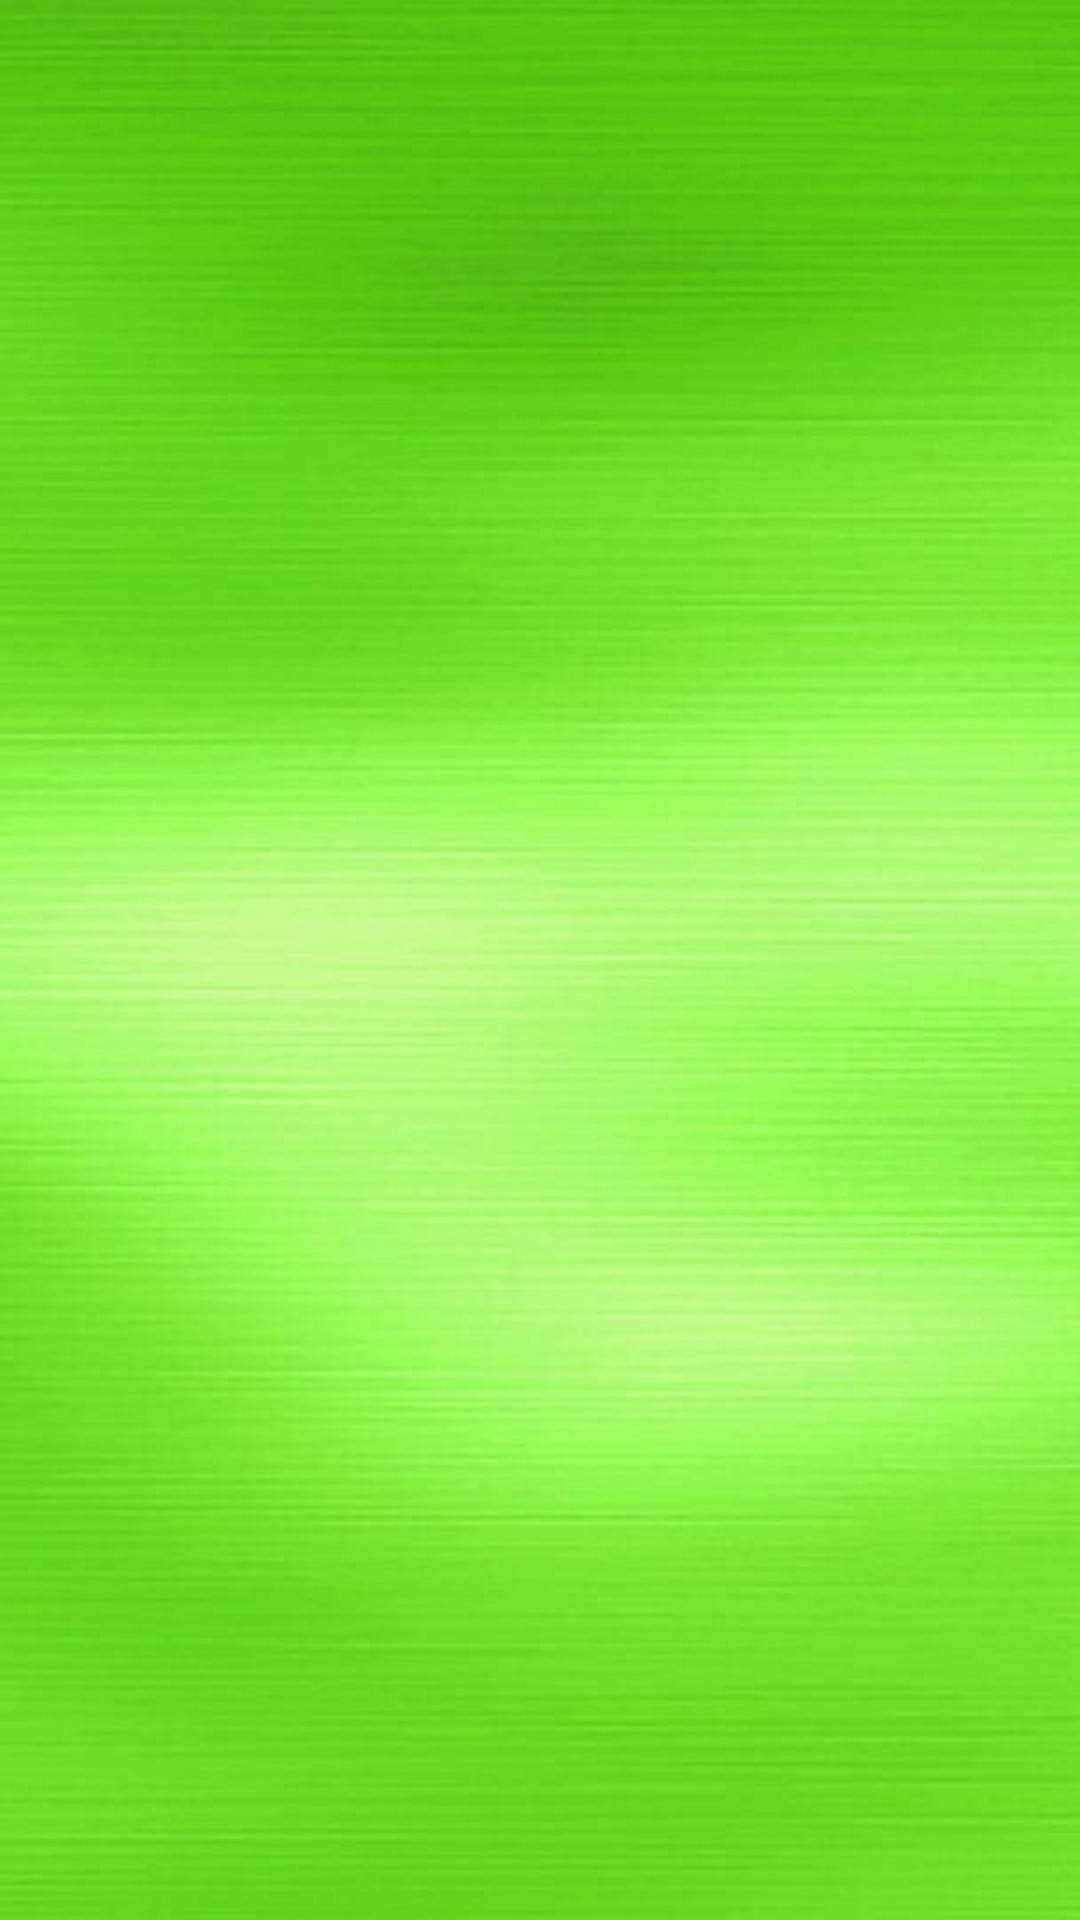 Textured Super Light Green Phone Wallpaper